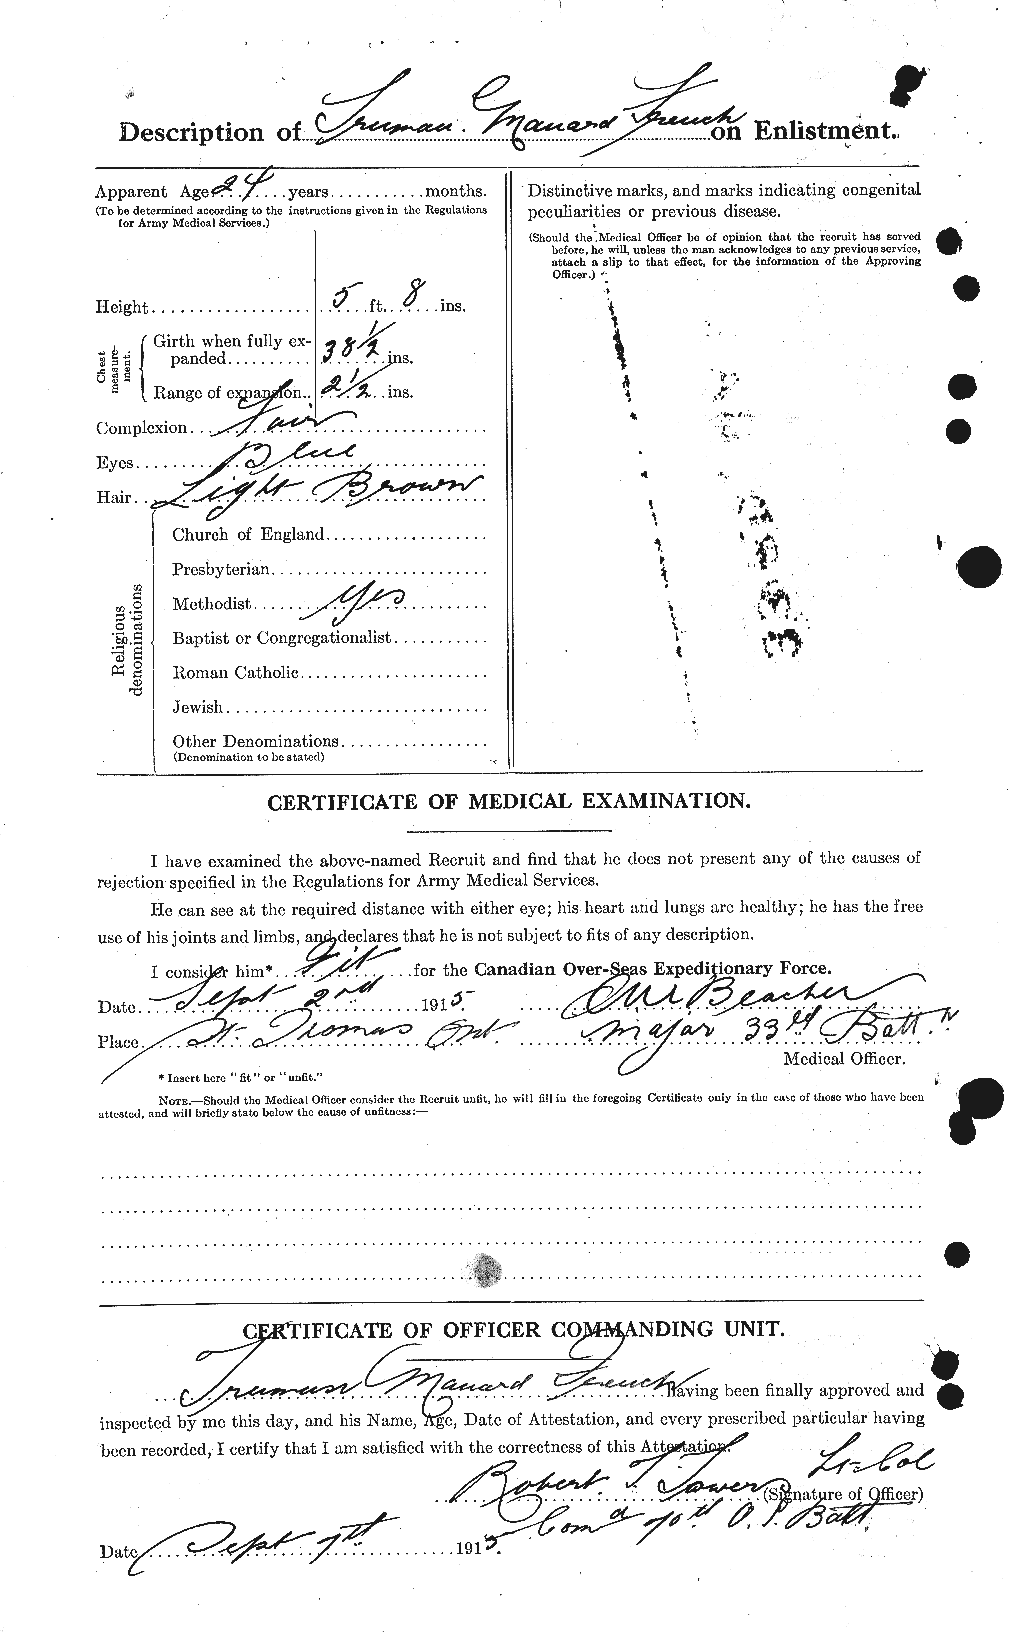 Dossiers du Personnel de la Première Guerre mondiale - CEC 338243b